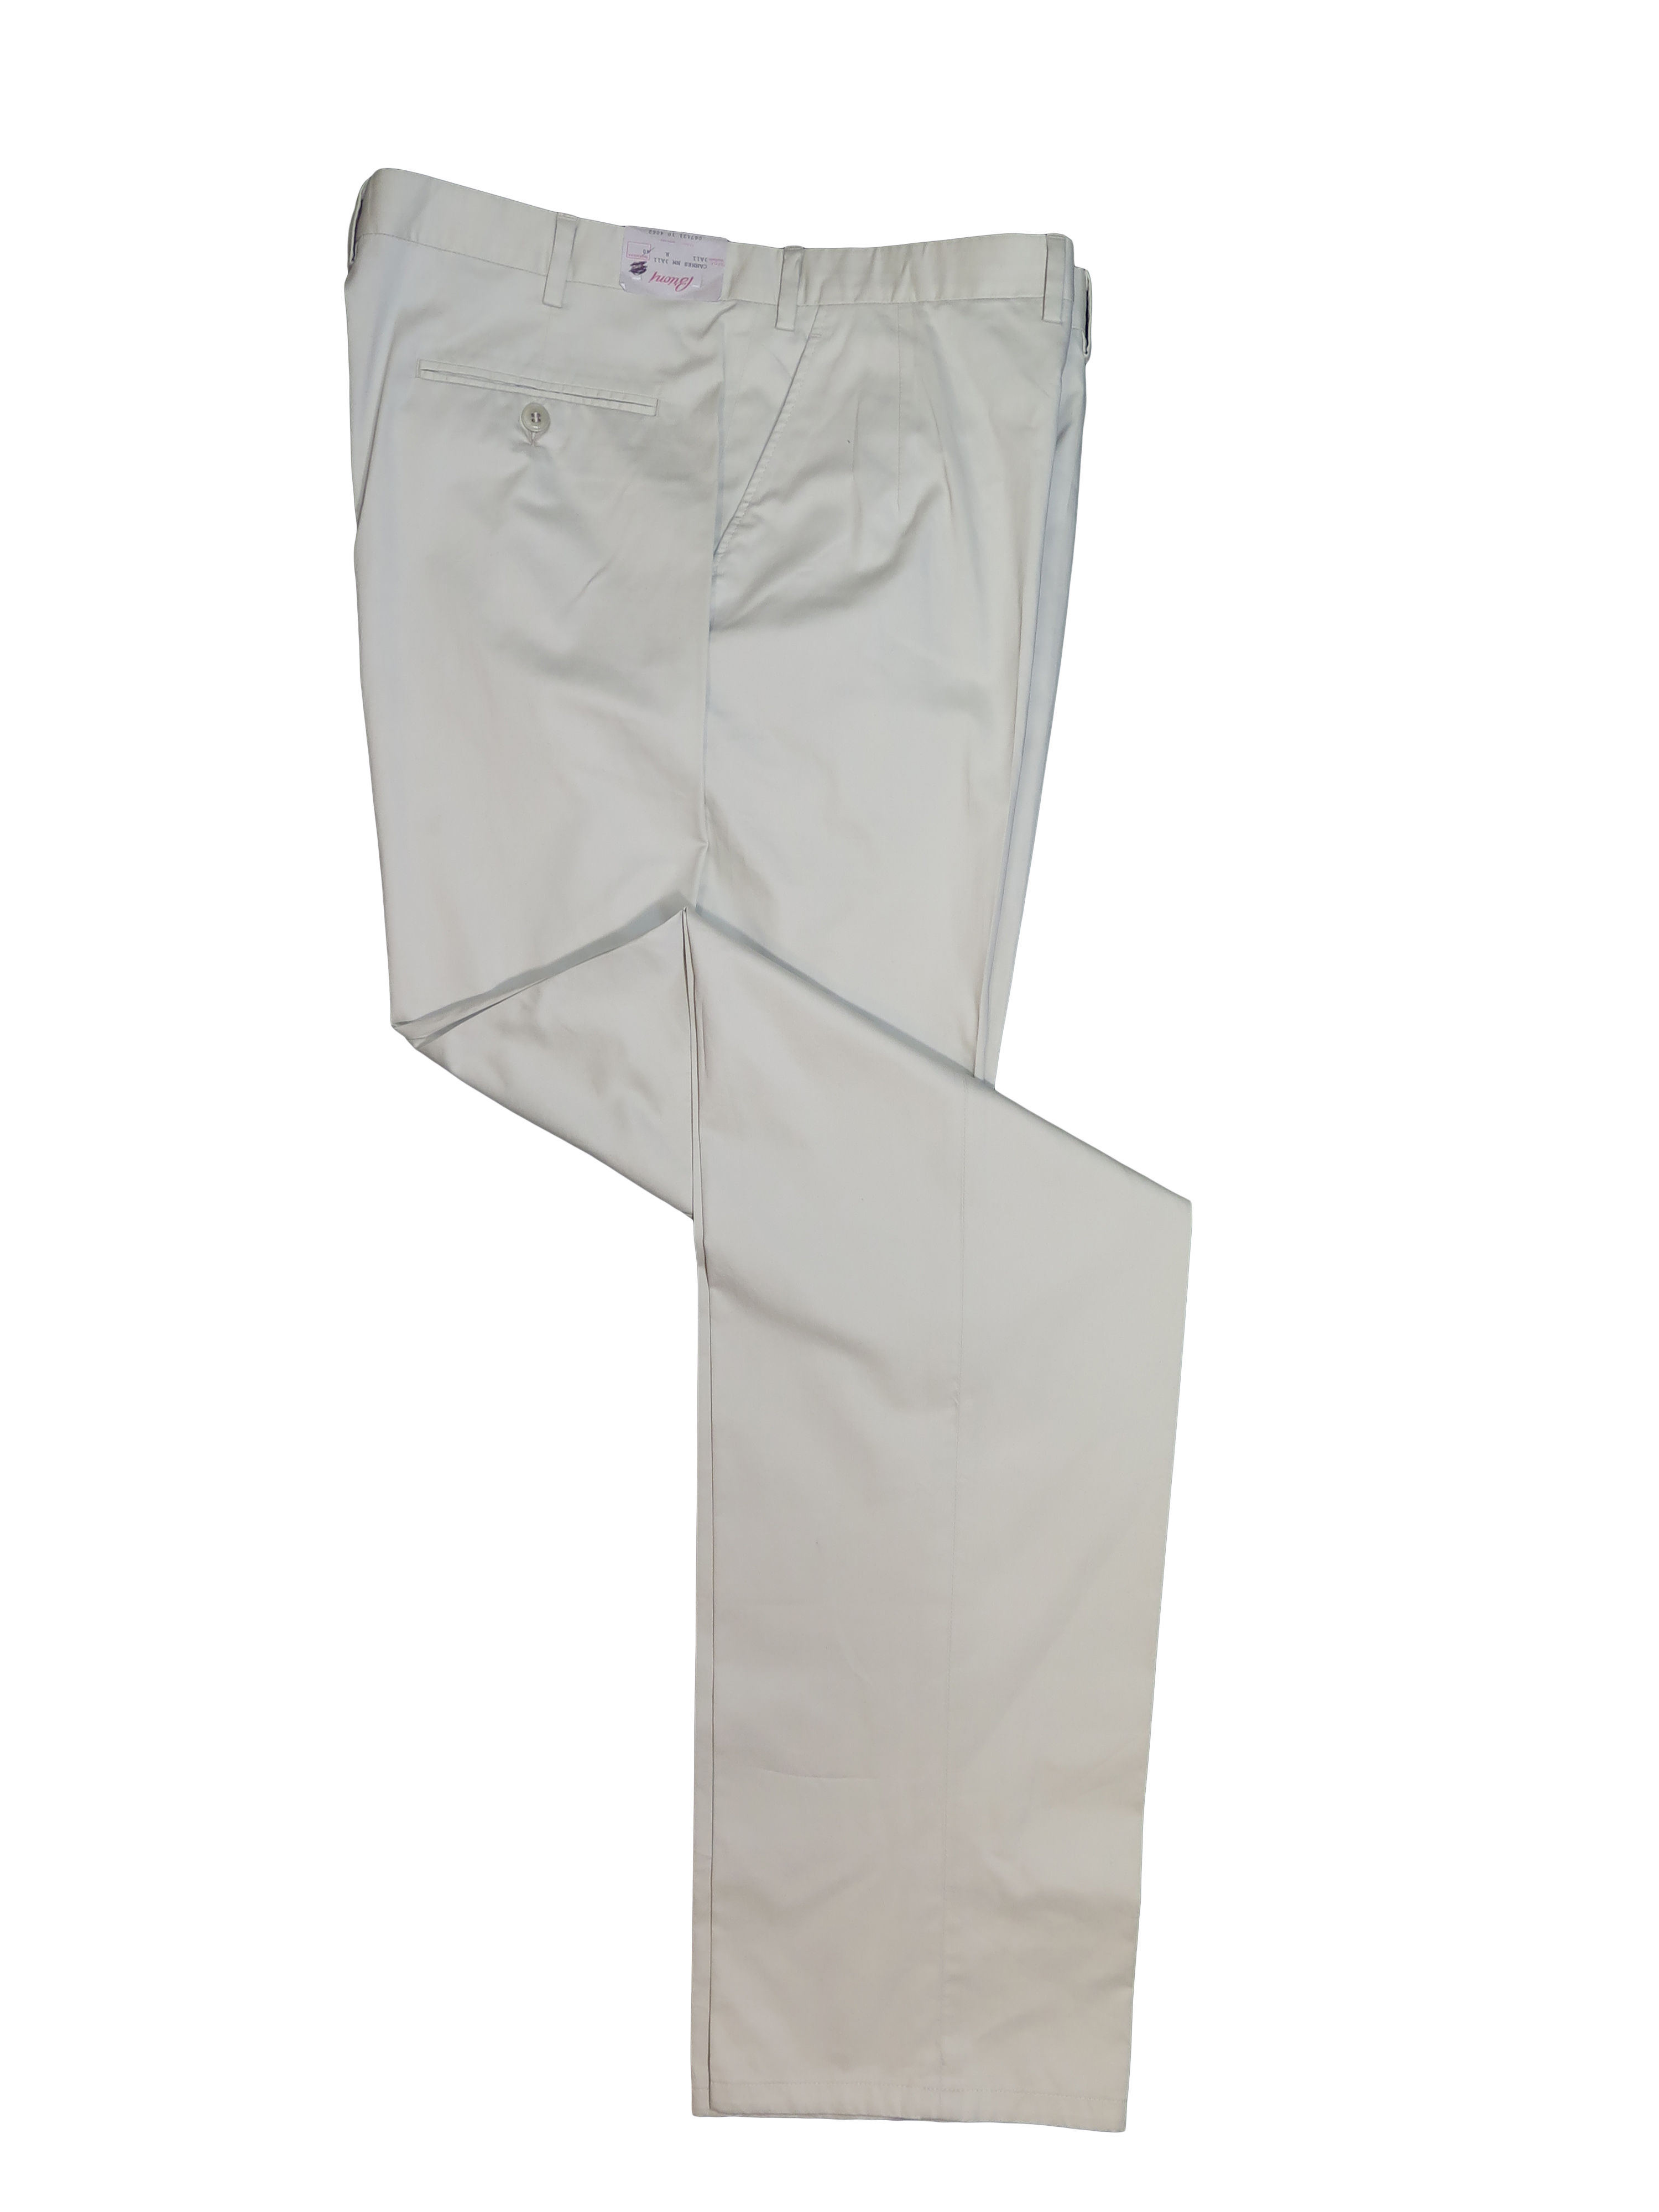 Brioni Men's Corttina Khaki Cotton Pants 40 - image 1 of 1